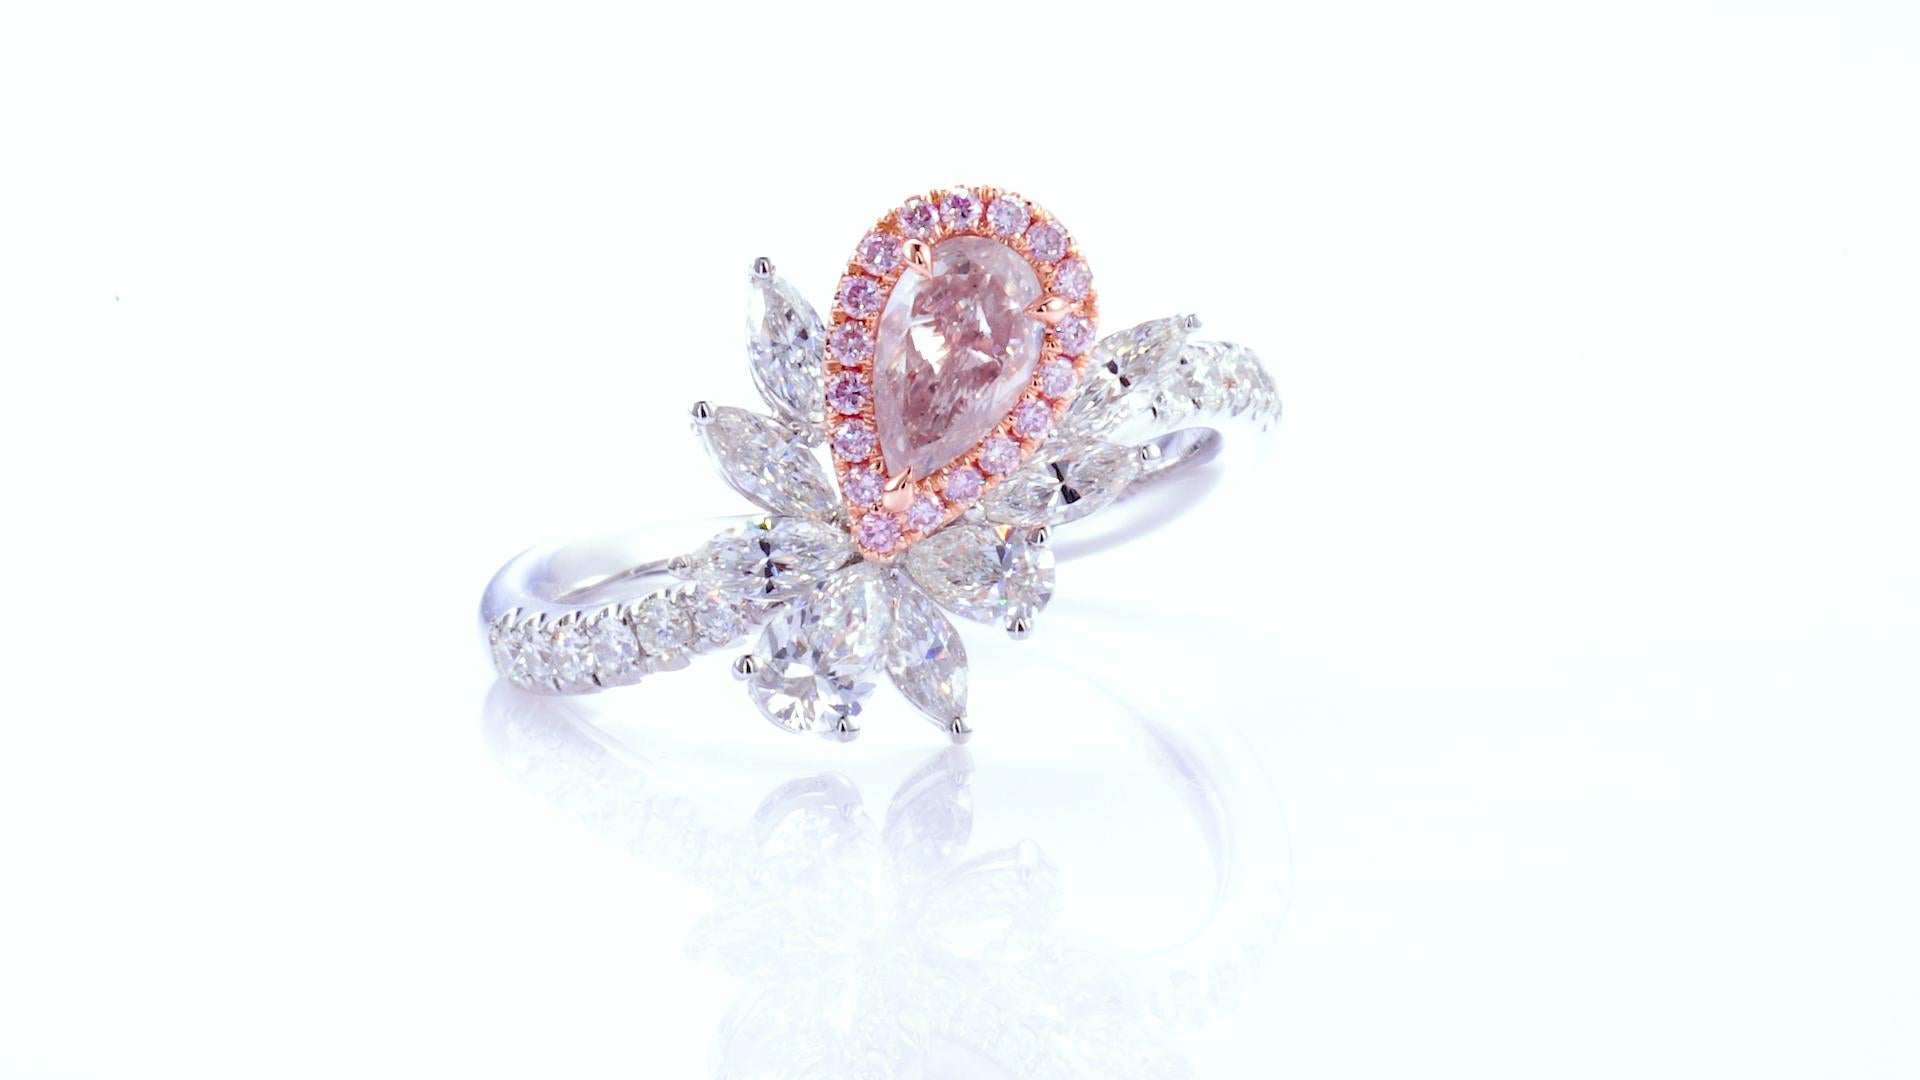 0.40ct Diamant poire de couleur naturelle rose clair certifié GIA monté sur or 18kt avec de petits diamants roses et blancs naturels. 

Cette bague en diamant rose clair serti de poires est un véritable chef-d'œuvre d'élégance et d'élégance. Réalisé